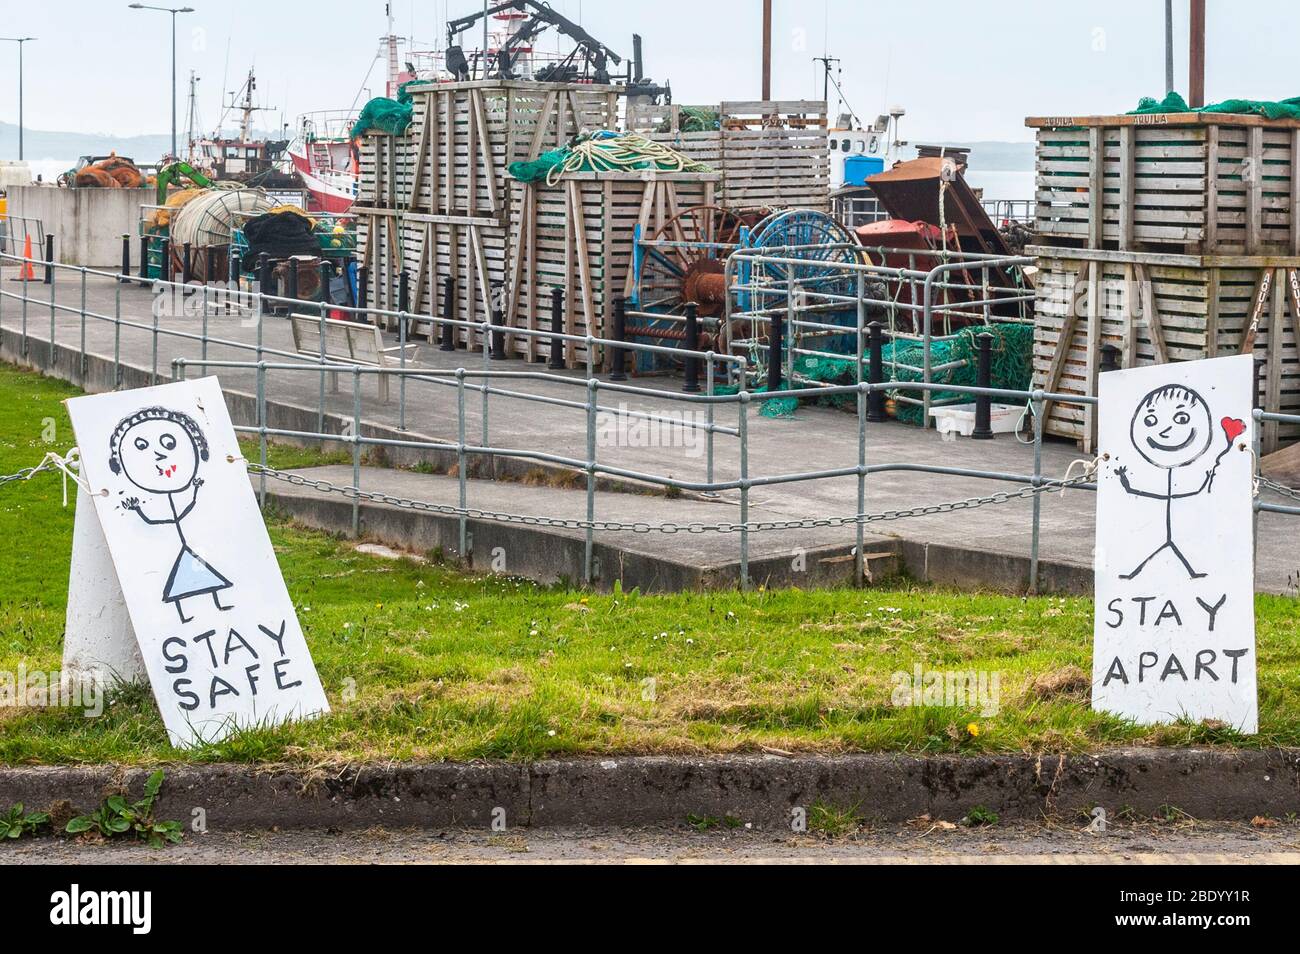 Baltimore, West Cork, Irlande. 10 avril 2020. Deux signes conseillant les gens de distanciation sociale due à Covid-19 sont apparus aujourd'hui dans le village de pêcheurs de Baltimore. Les panneaux étaient à 2 mètres d'intervalle, conformément aux directives du gouvernement. Crédit : Andy Gibson/Alay Live News Banque D'Images